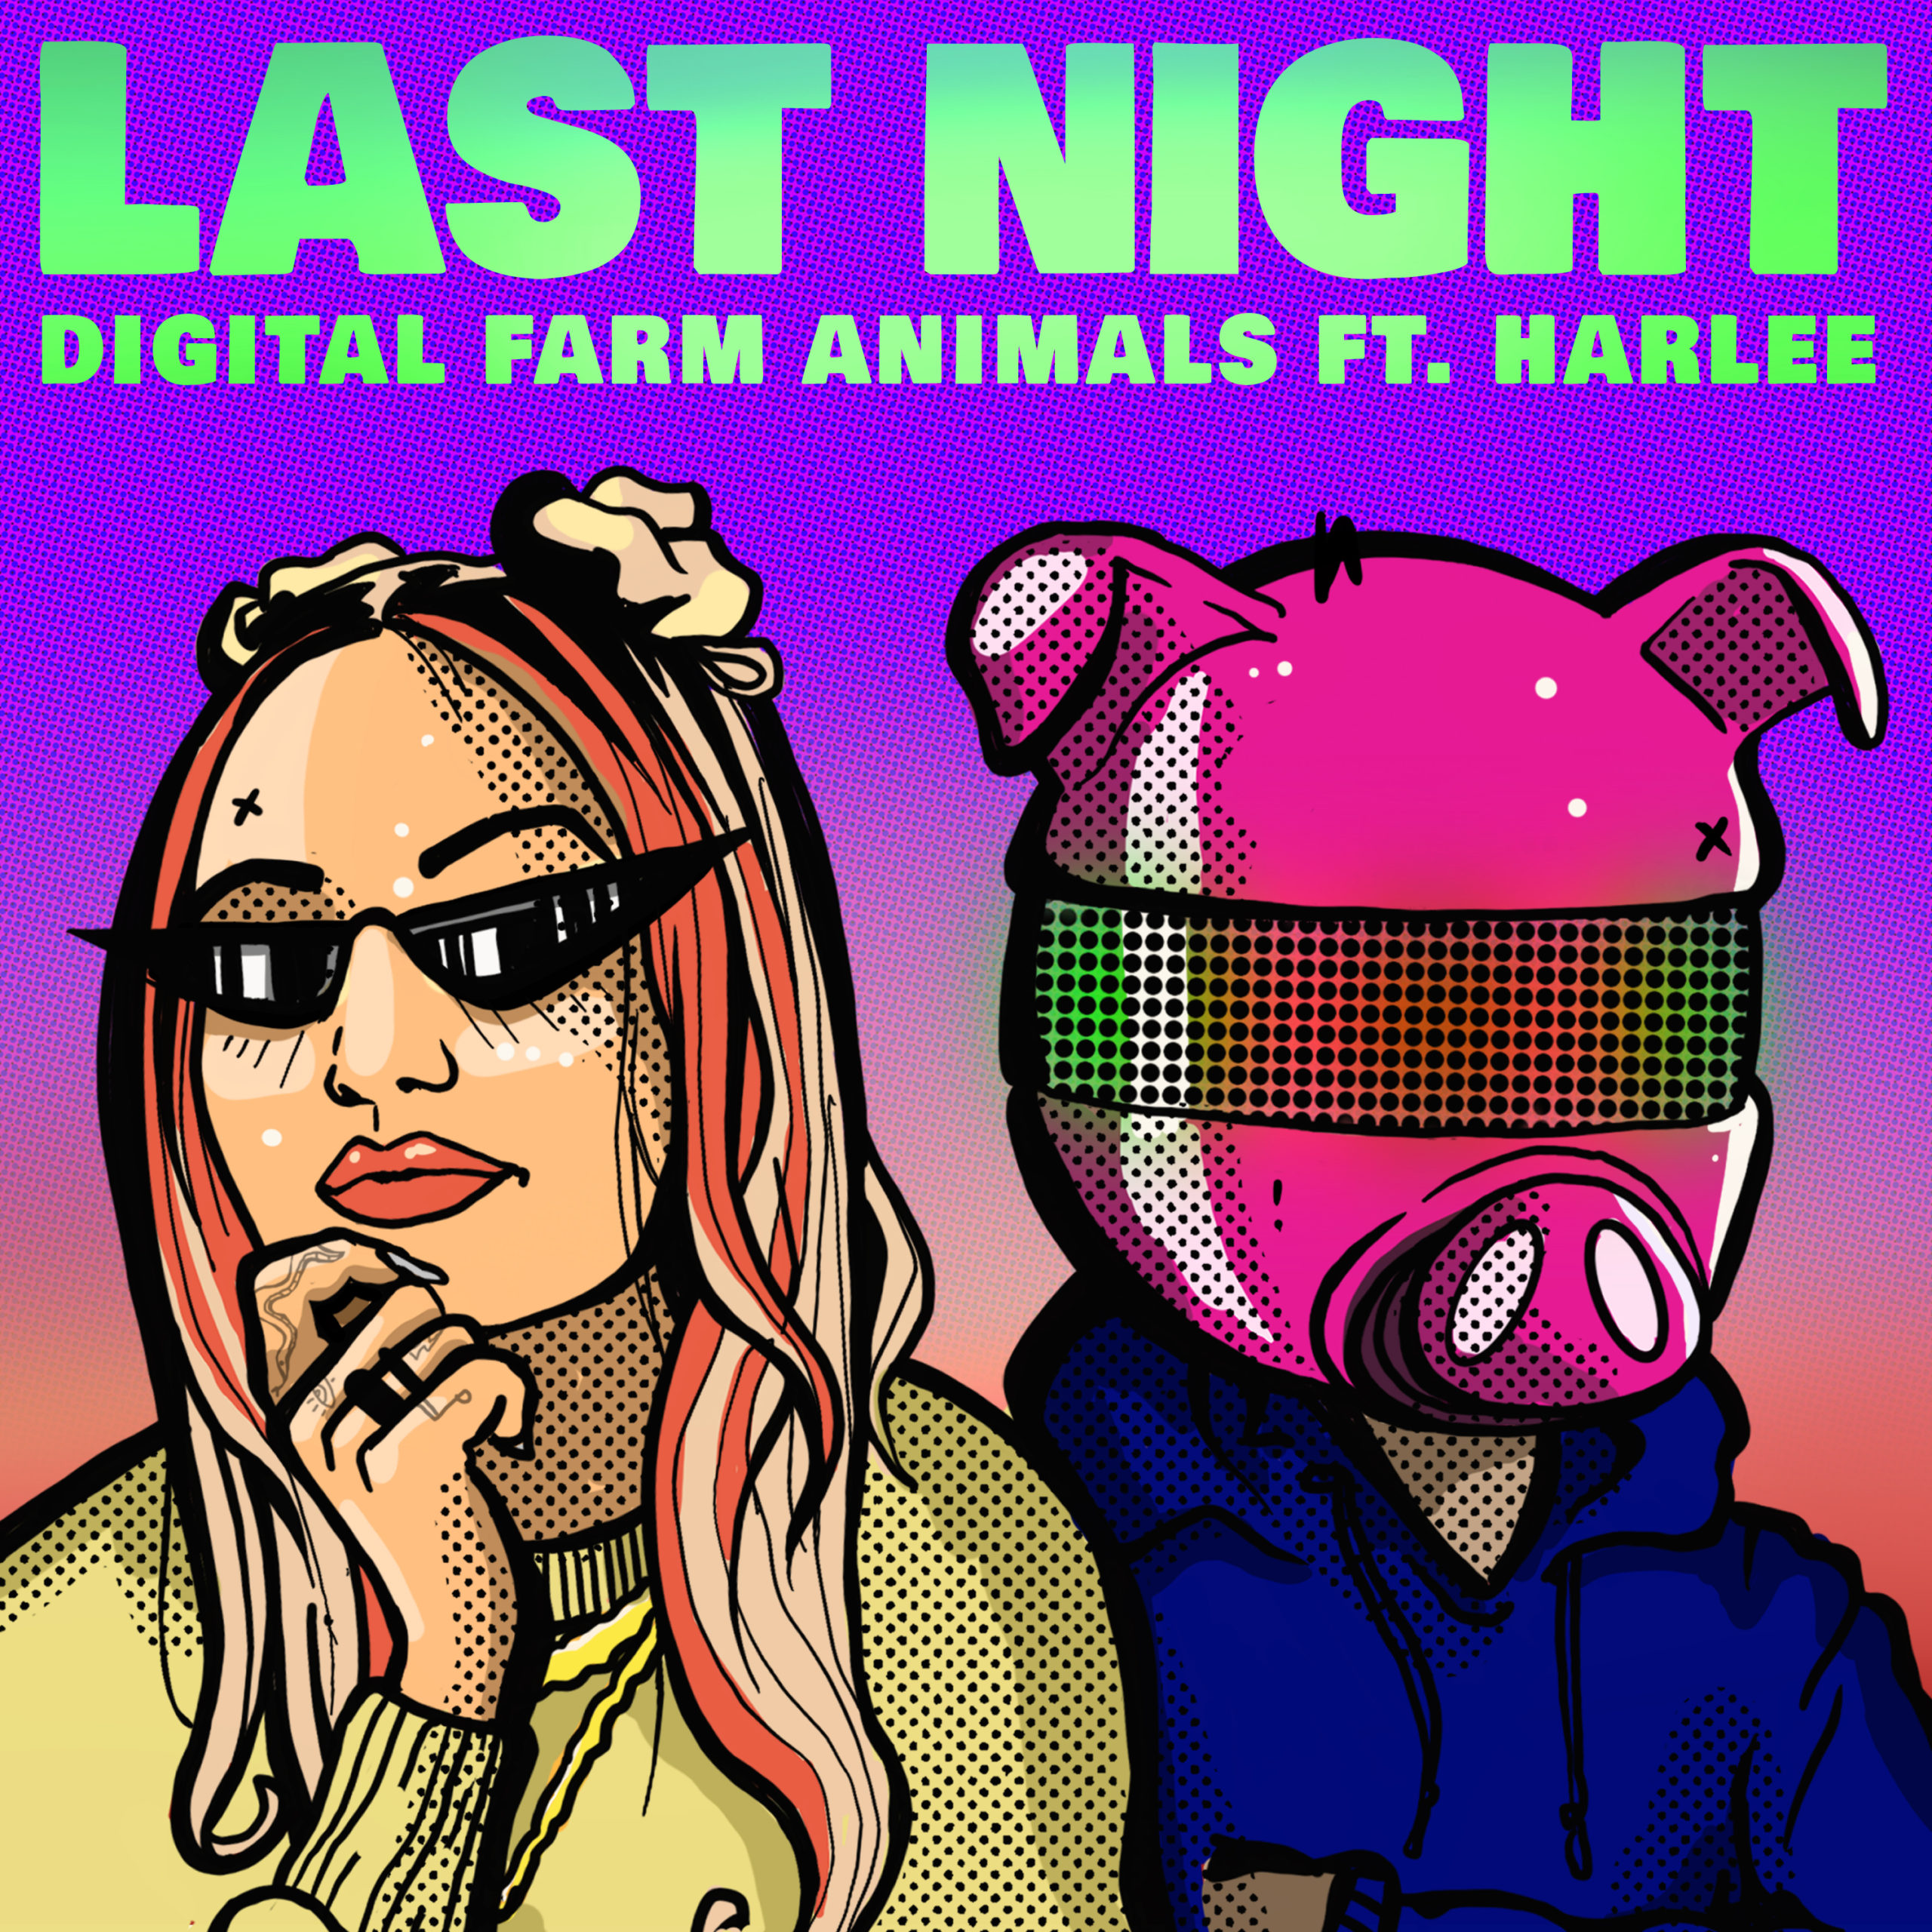 Digital Farm Animals HARLEE Last Night